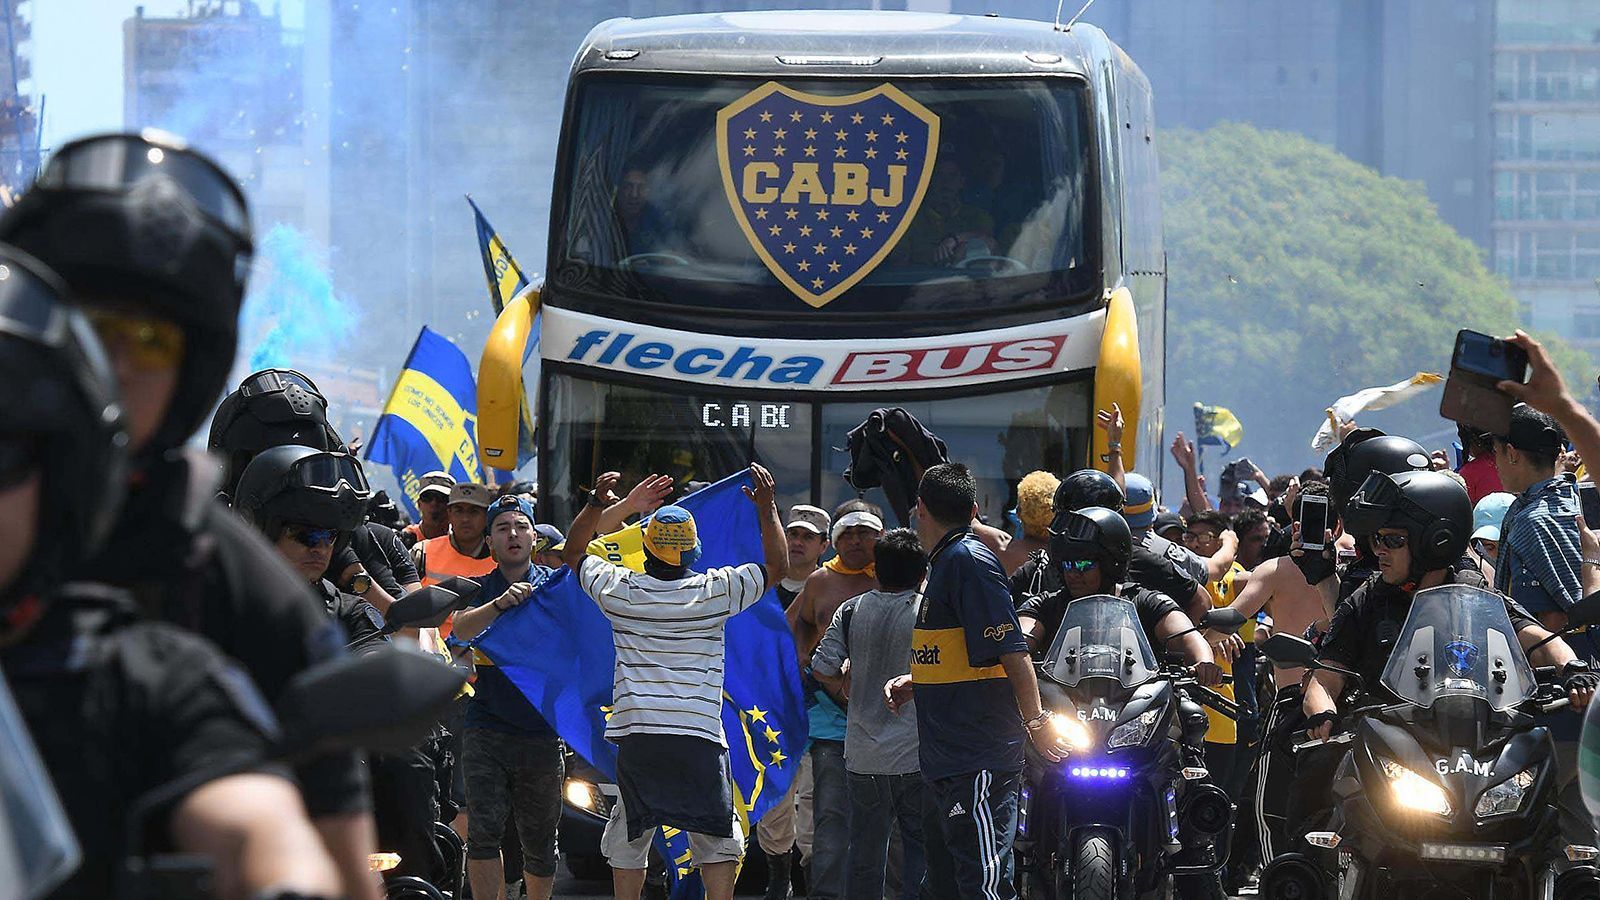 
                <strong>Boca-Bus startet zum "Jahrhundertspiel"</strong><br>
                Unter großem Jubel der eigenen Fans machte sich der Mannschaftsbus der Boca Juniors auf den Weg zum Stadion von River Plate. Seit 2013 ist es in Argentinien Gästefans nicht mehr erlaubt, ins Stadion zu gehen.
              